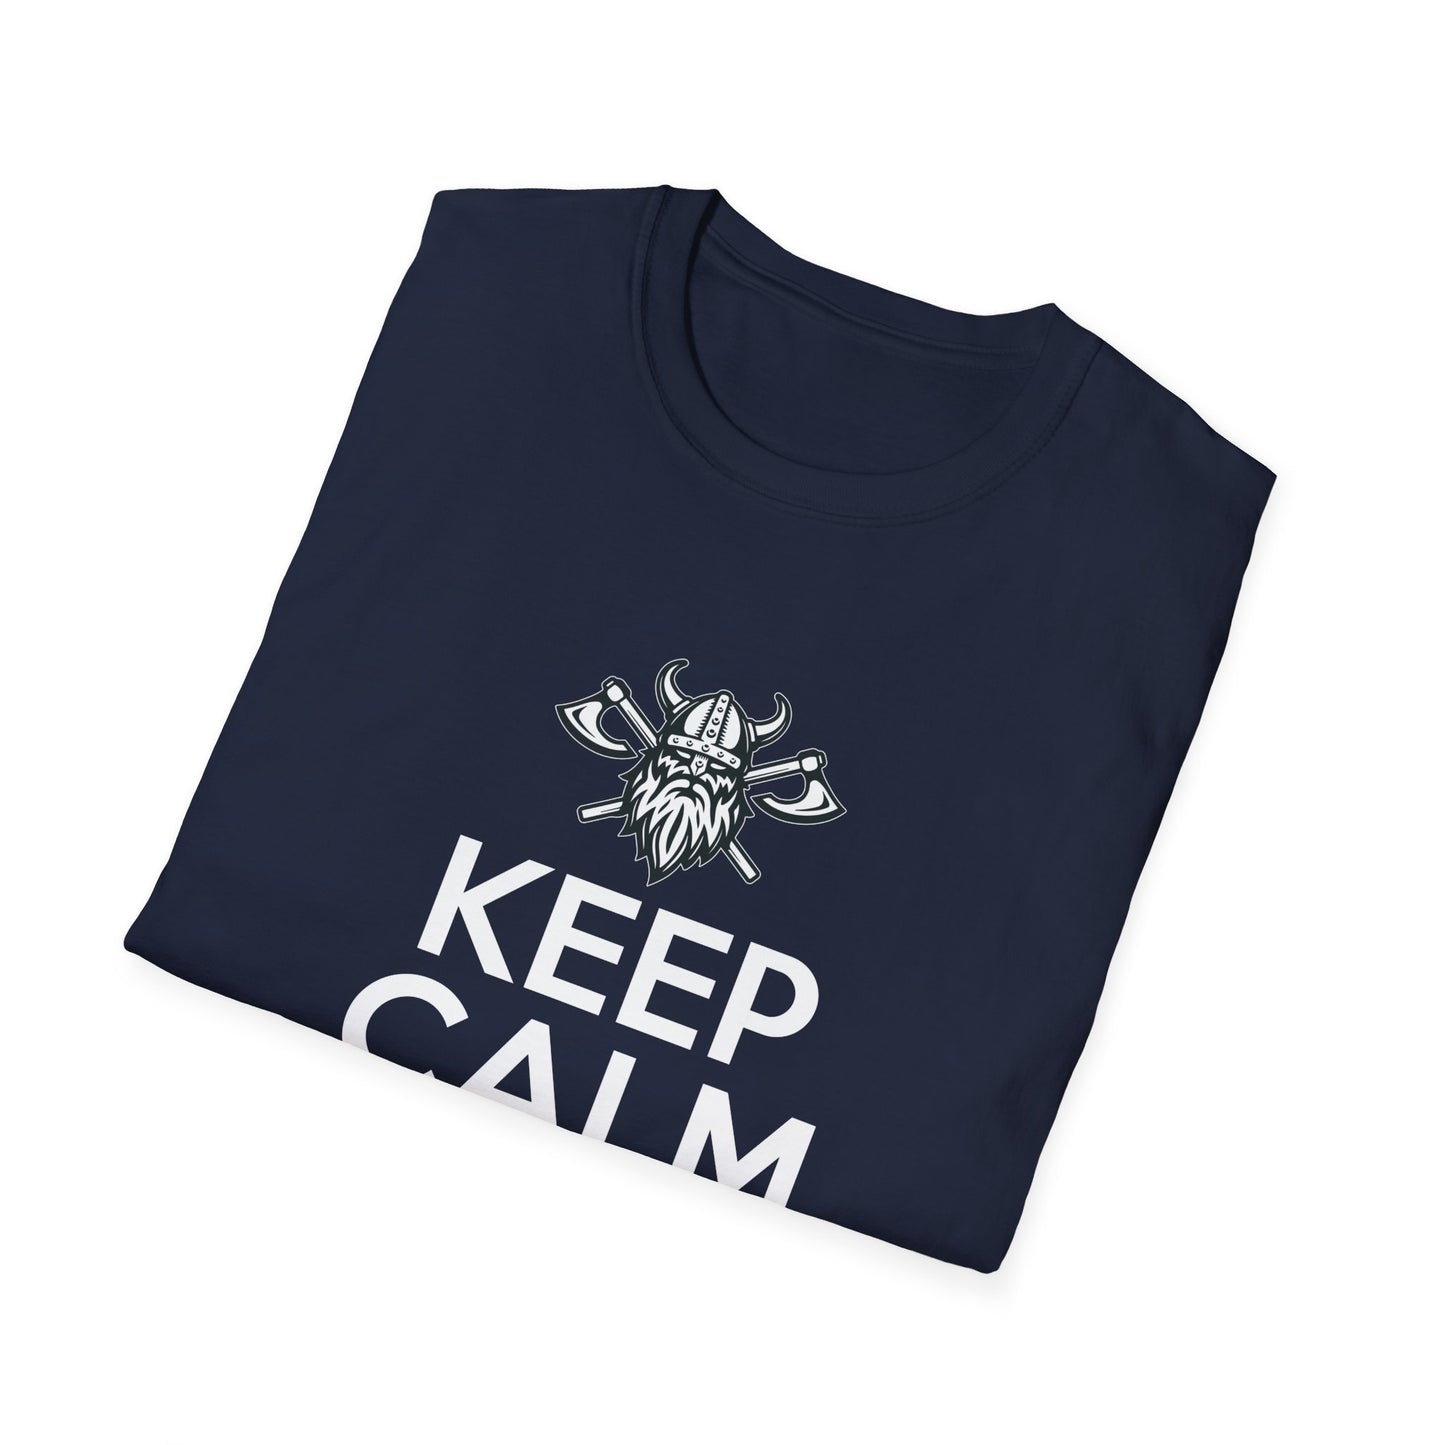 Keep Calm And Go Viking T-Shirt